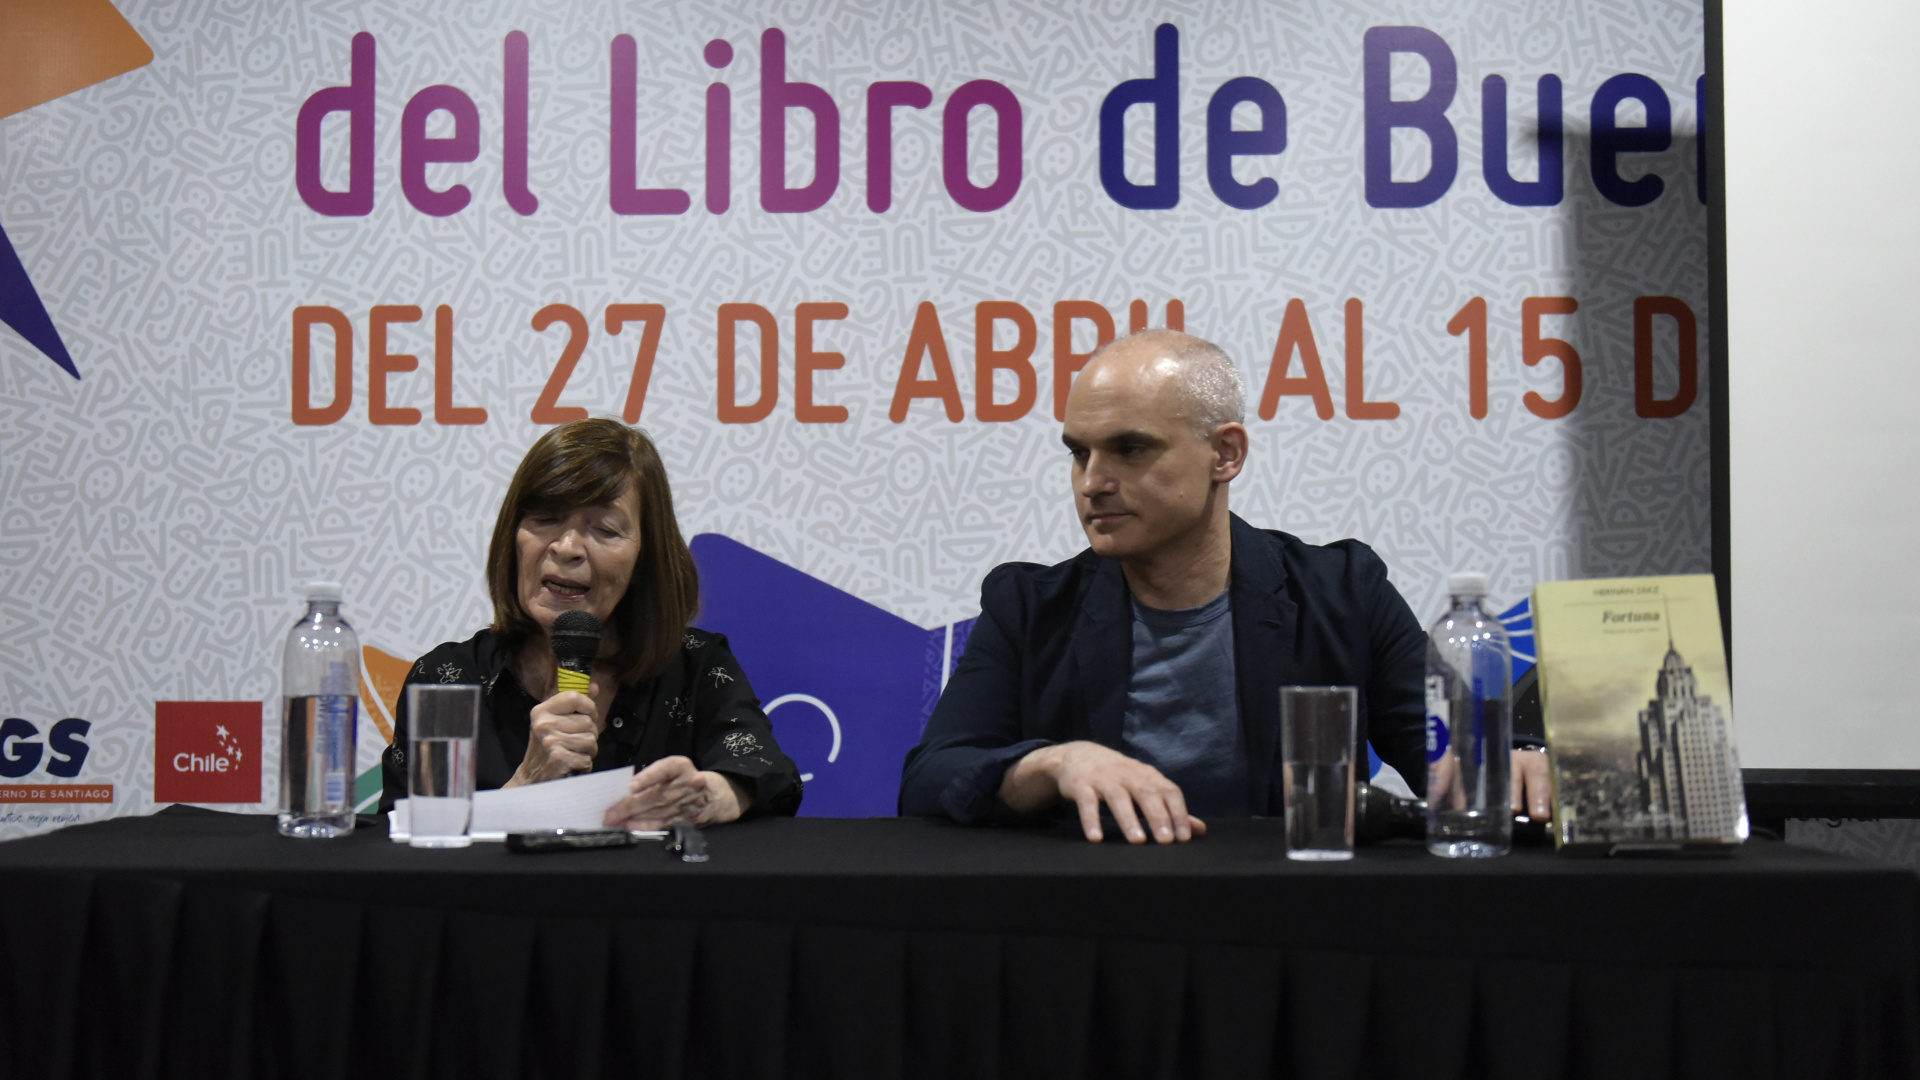 Días atrás, el autor de Fortuna presentó su novela en la Feria del libro junto a Graciela Speranza. (Gustavo Gavotti)